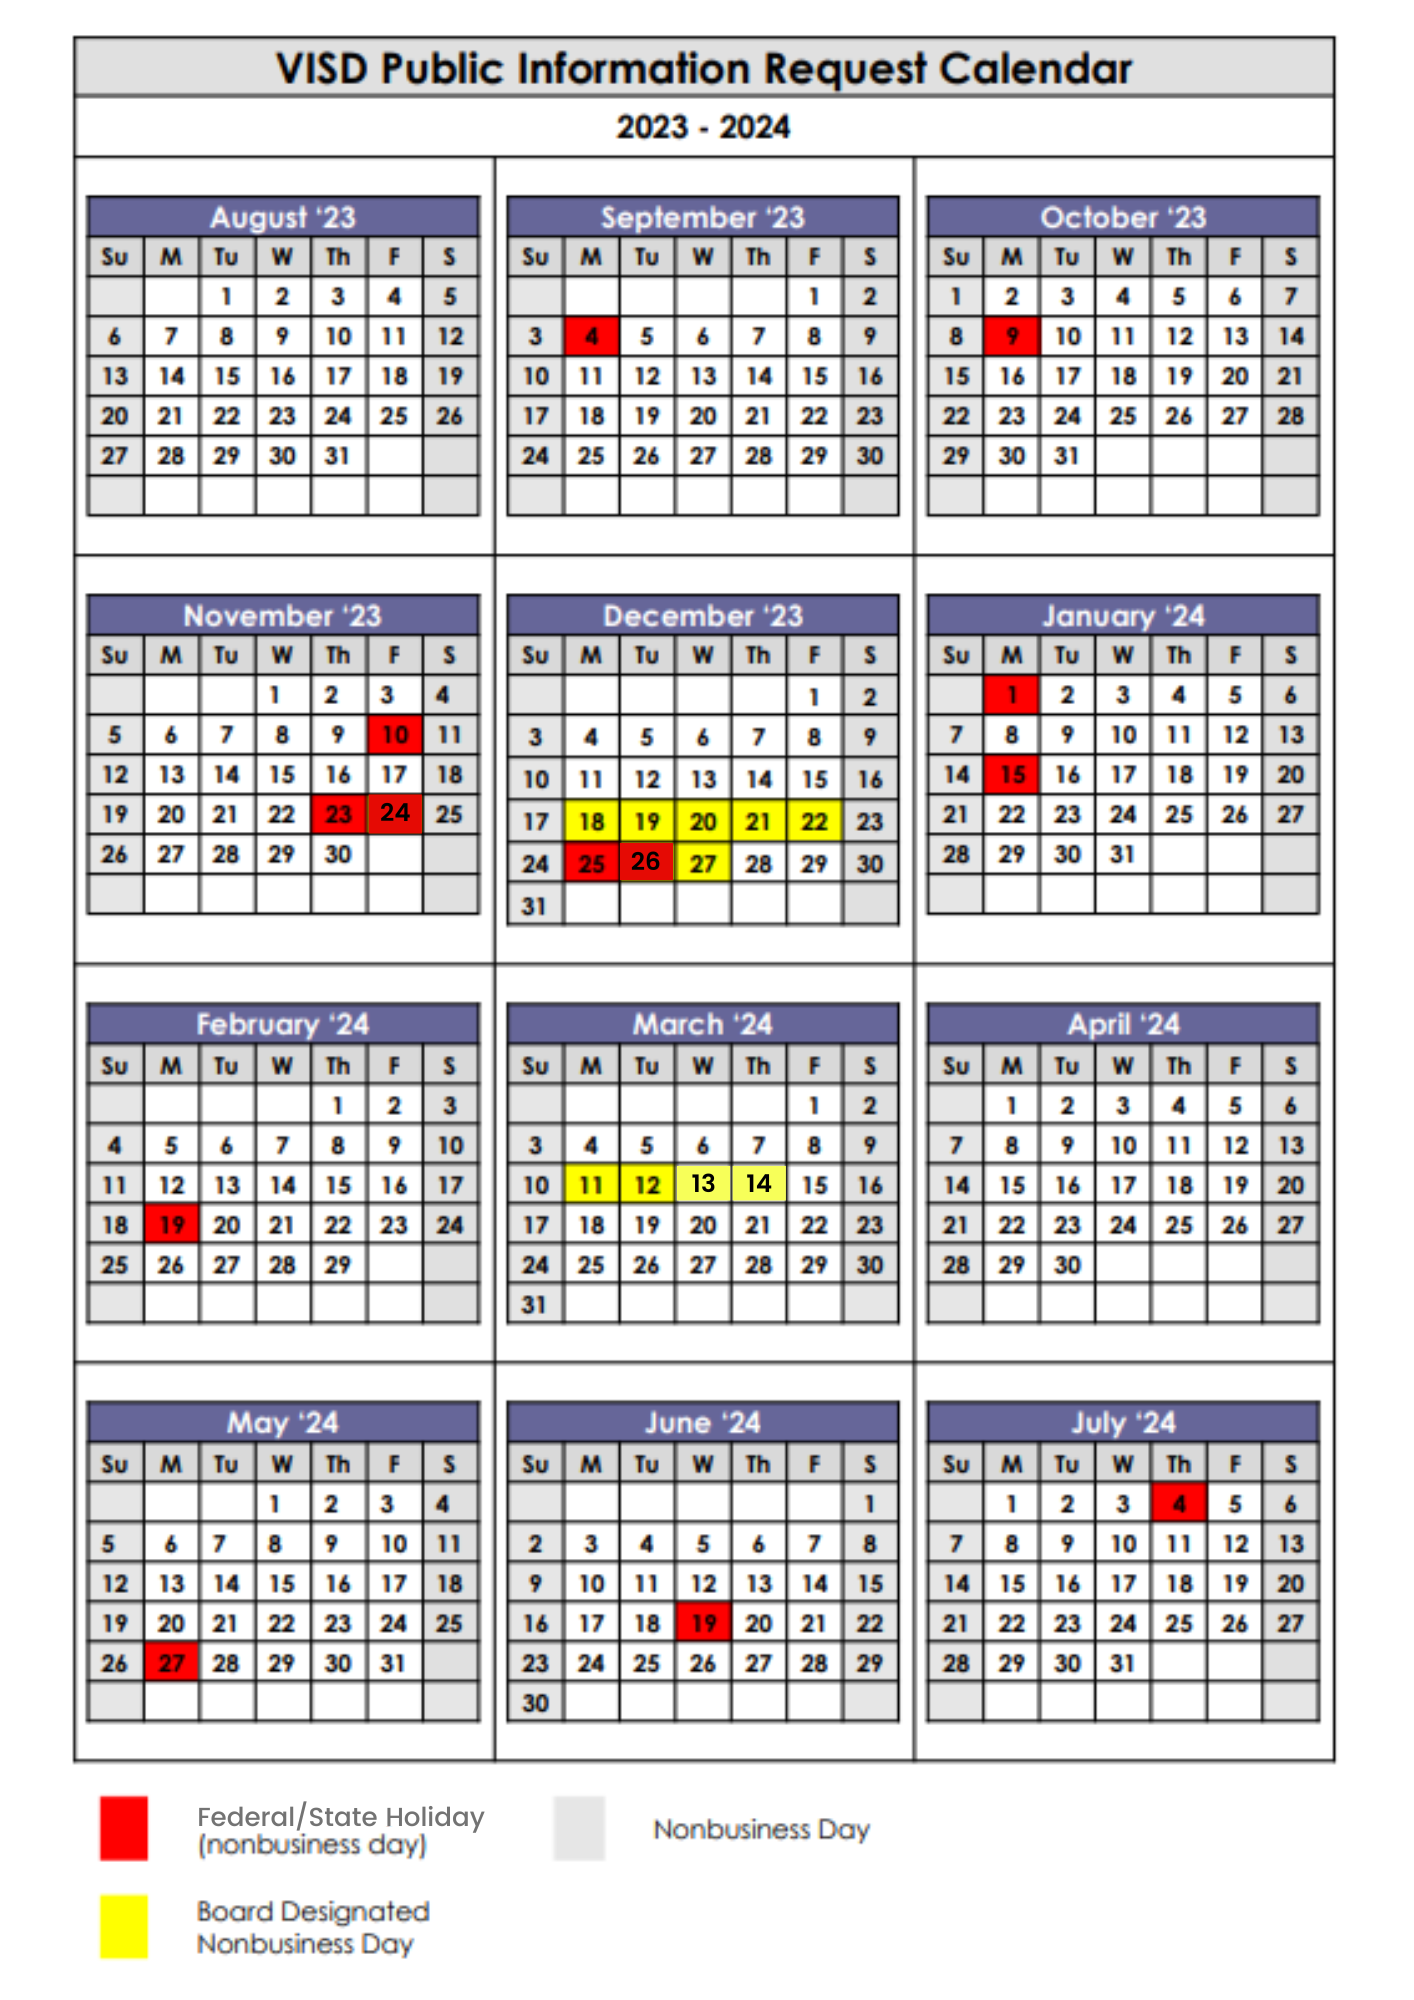 PIO Request calendar